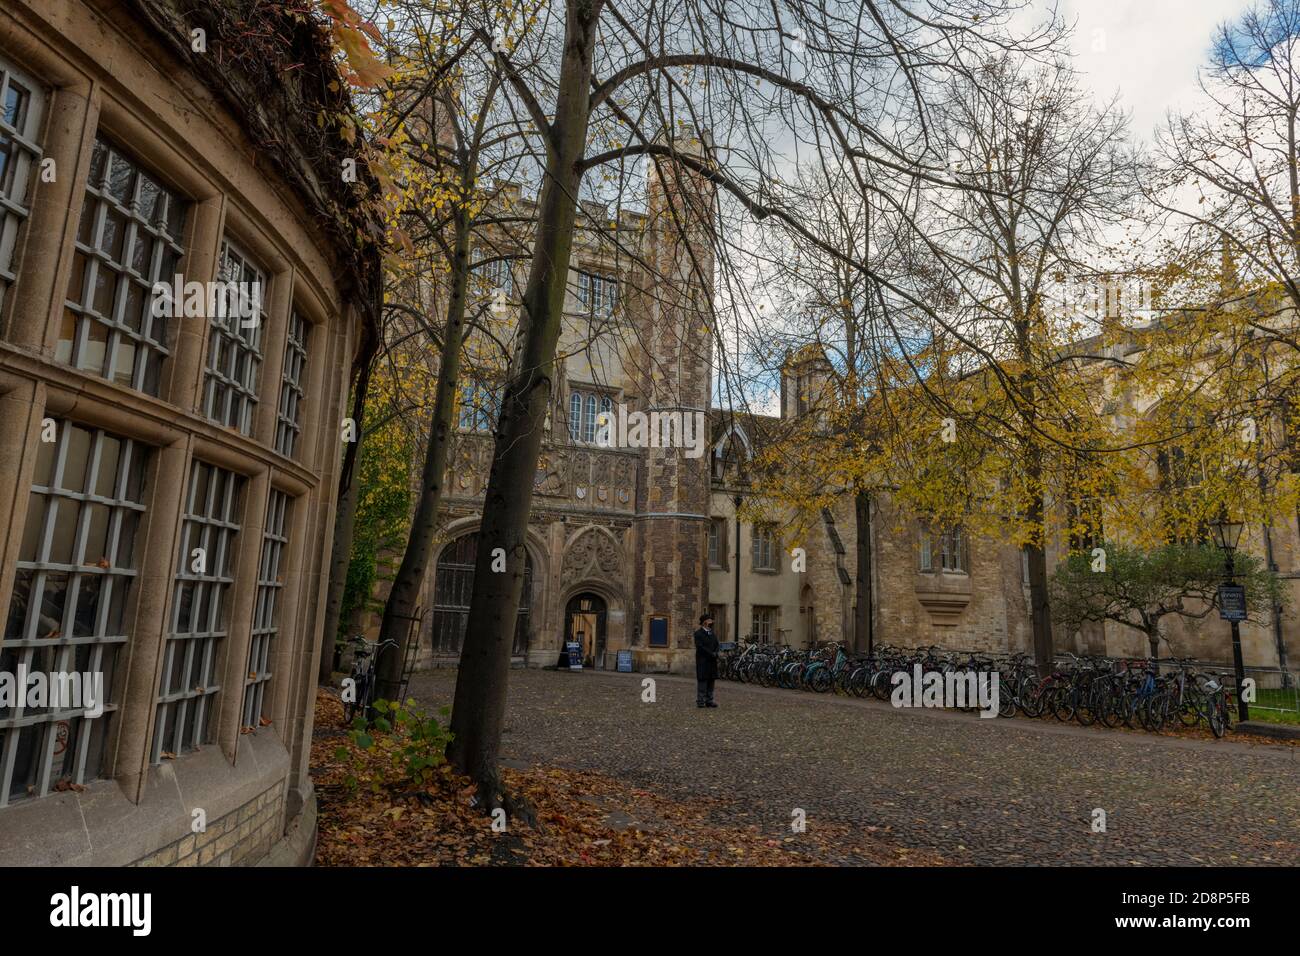 edifici storici e luoghi religiosi nel centro storico universitario di cambridge Foto Stock